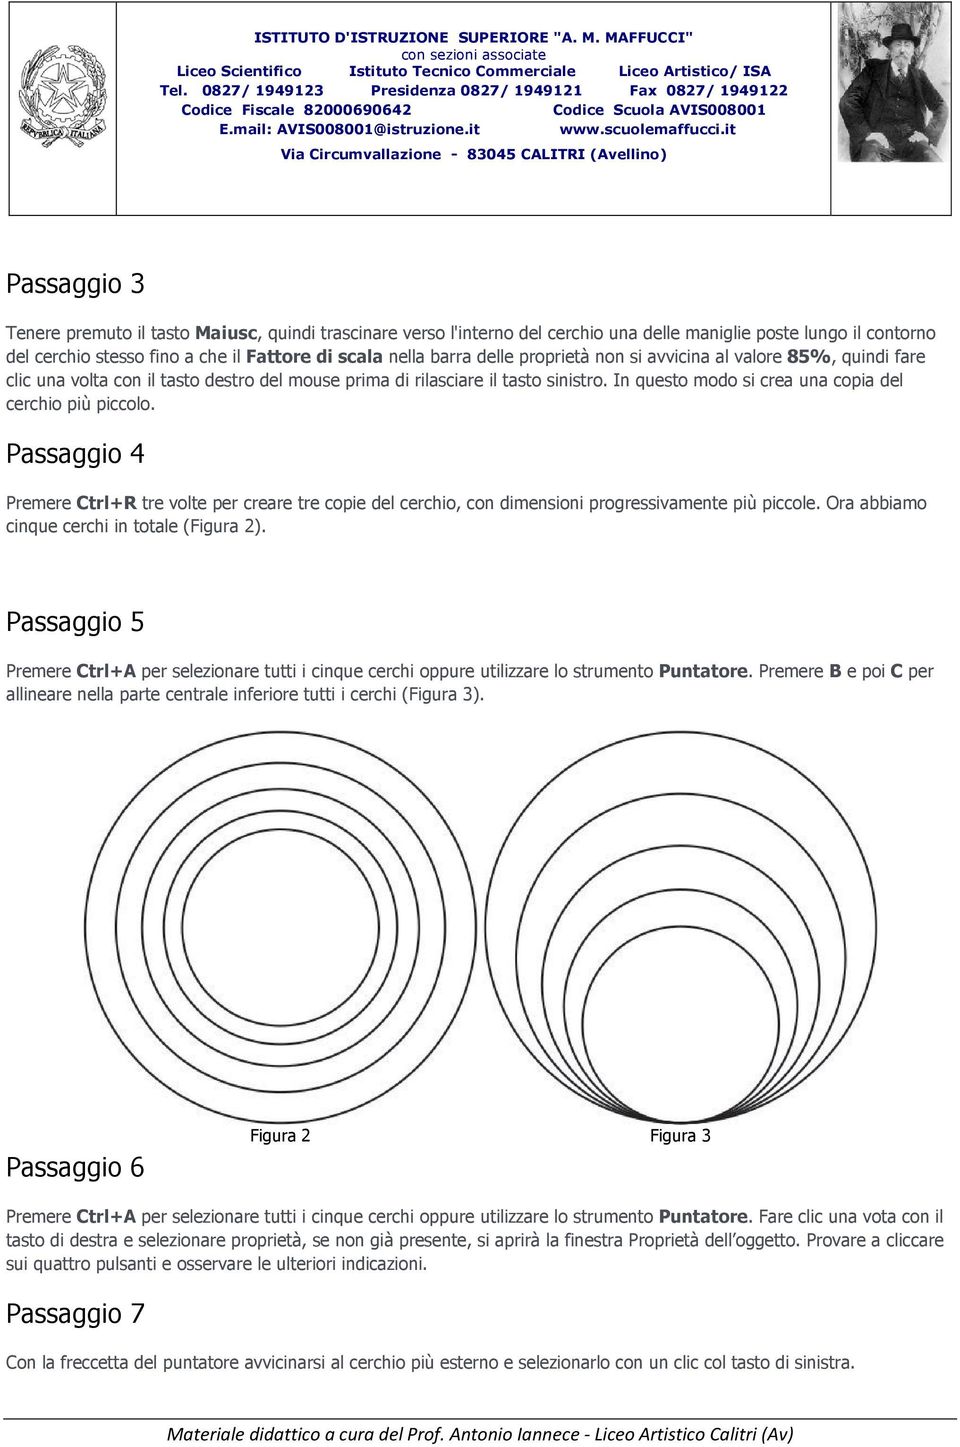 Passaggio 4 Premere Ctrl+R tre volte per creare tre copie del cerchio, con dimensioni progressivamente più piccole. Ora abbiamo cinque cerchi in totale (Figura 2).